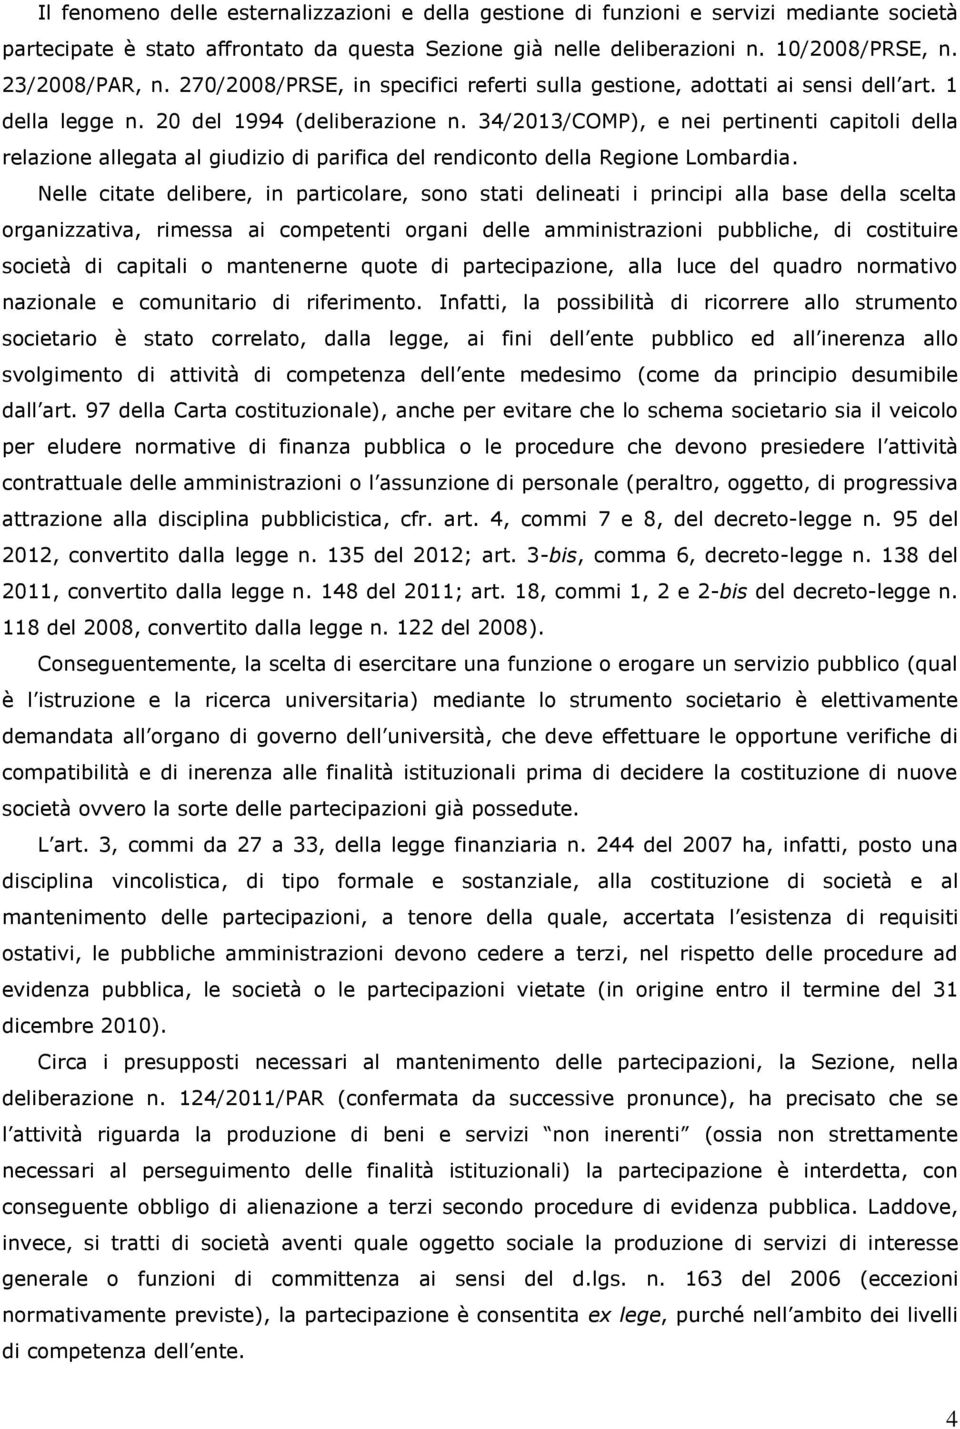 34/2013/COMP), e nei pertinenti capitoli della relazione allegata al giudizio di parifica del rendiconto della Regione Lombardia.